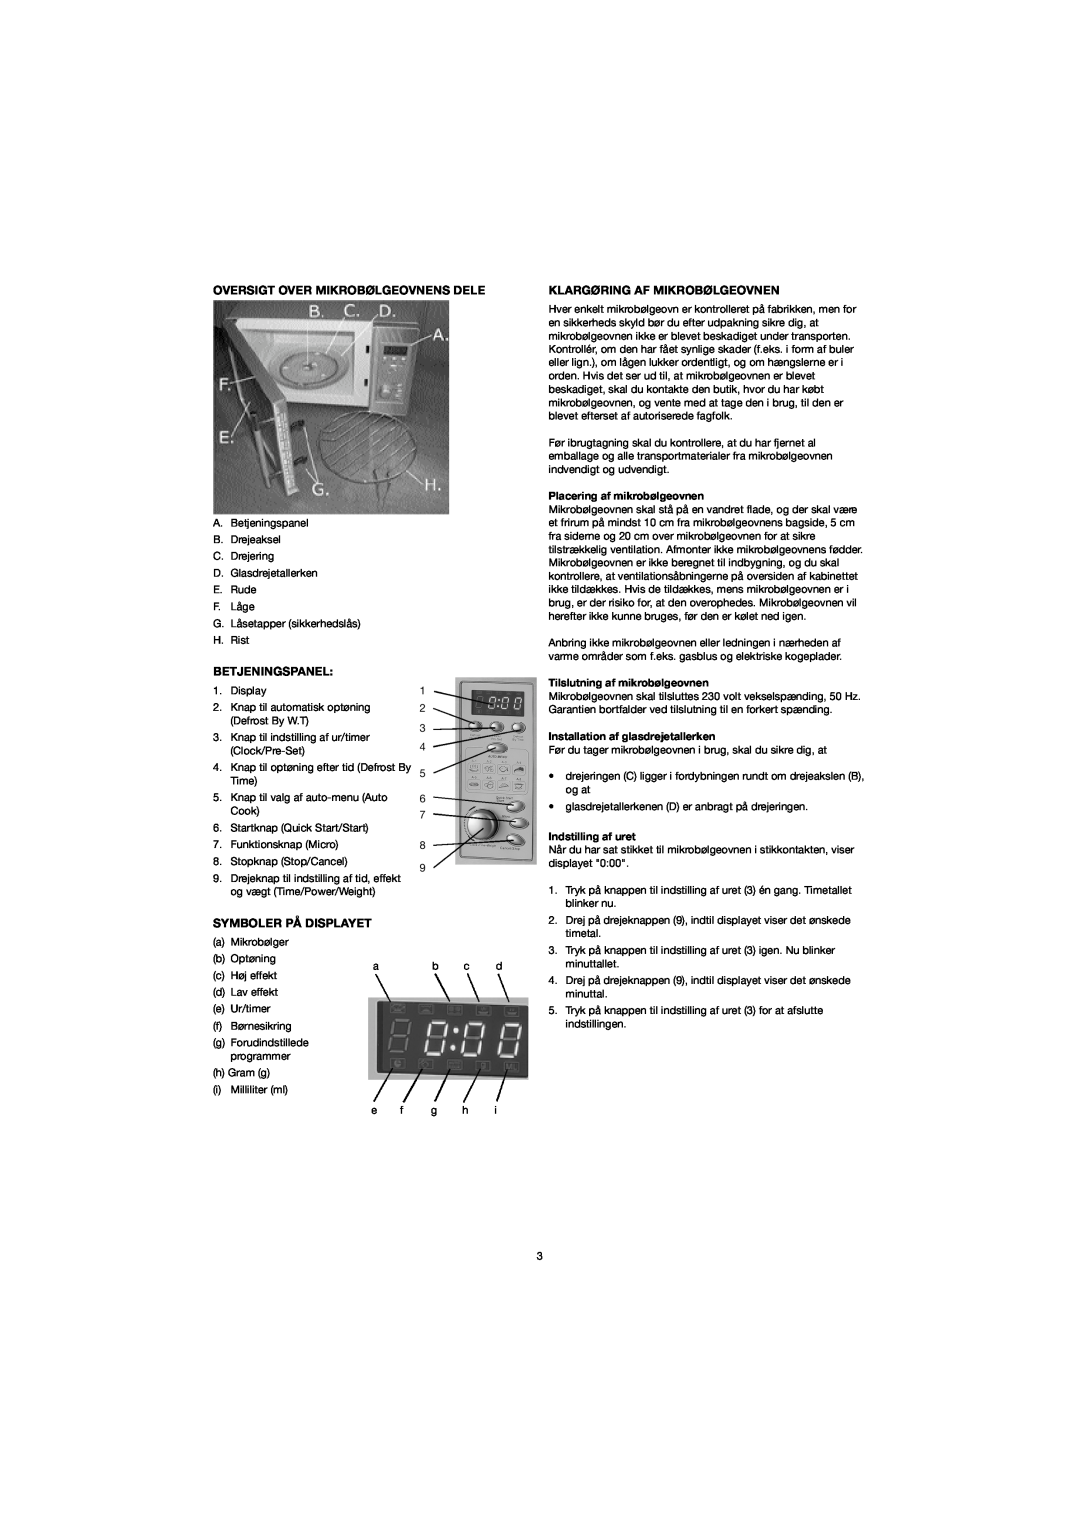 Melissa 753-094 Oversigt Over Mikrobølgeovnens Dele, Betjeningspanel, Symboler På Displayet, Klargøring Af Mikrobølgeovnen 